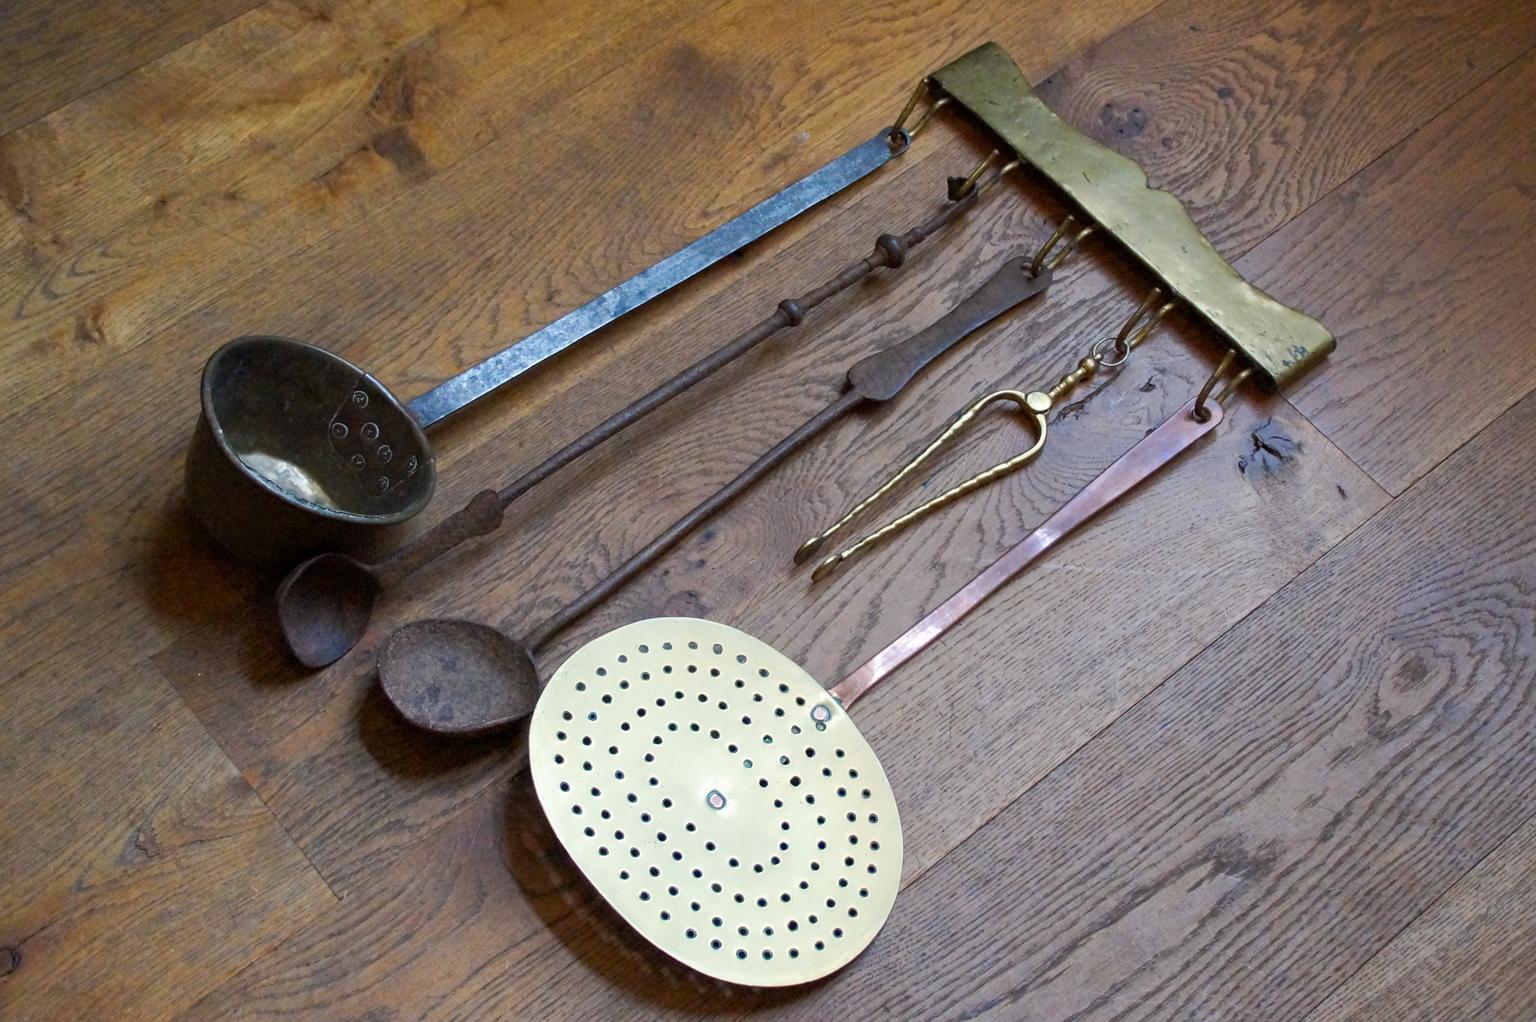 18th century kitchen utensils